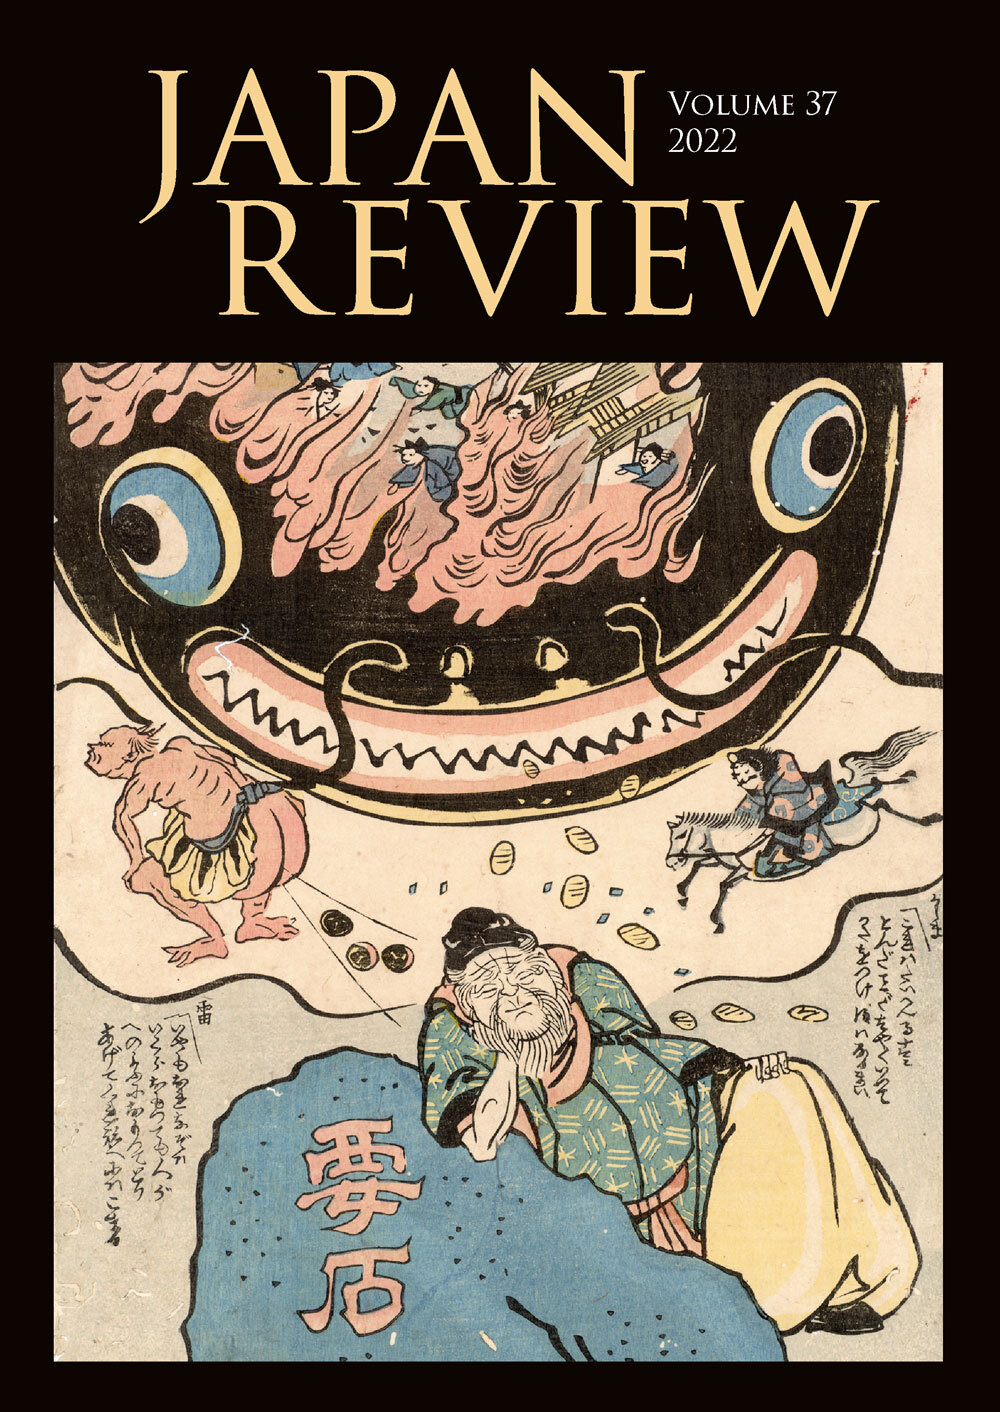 Japan Review